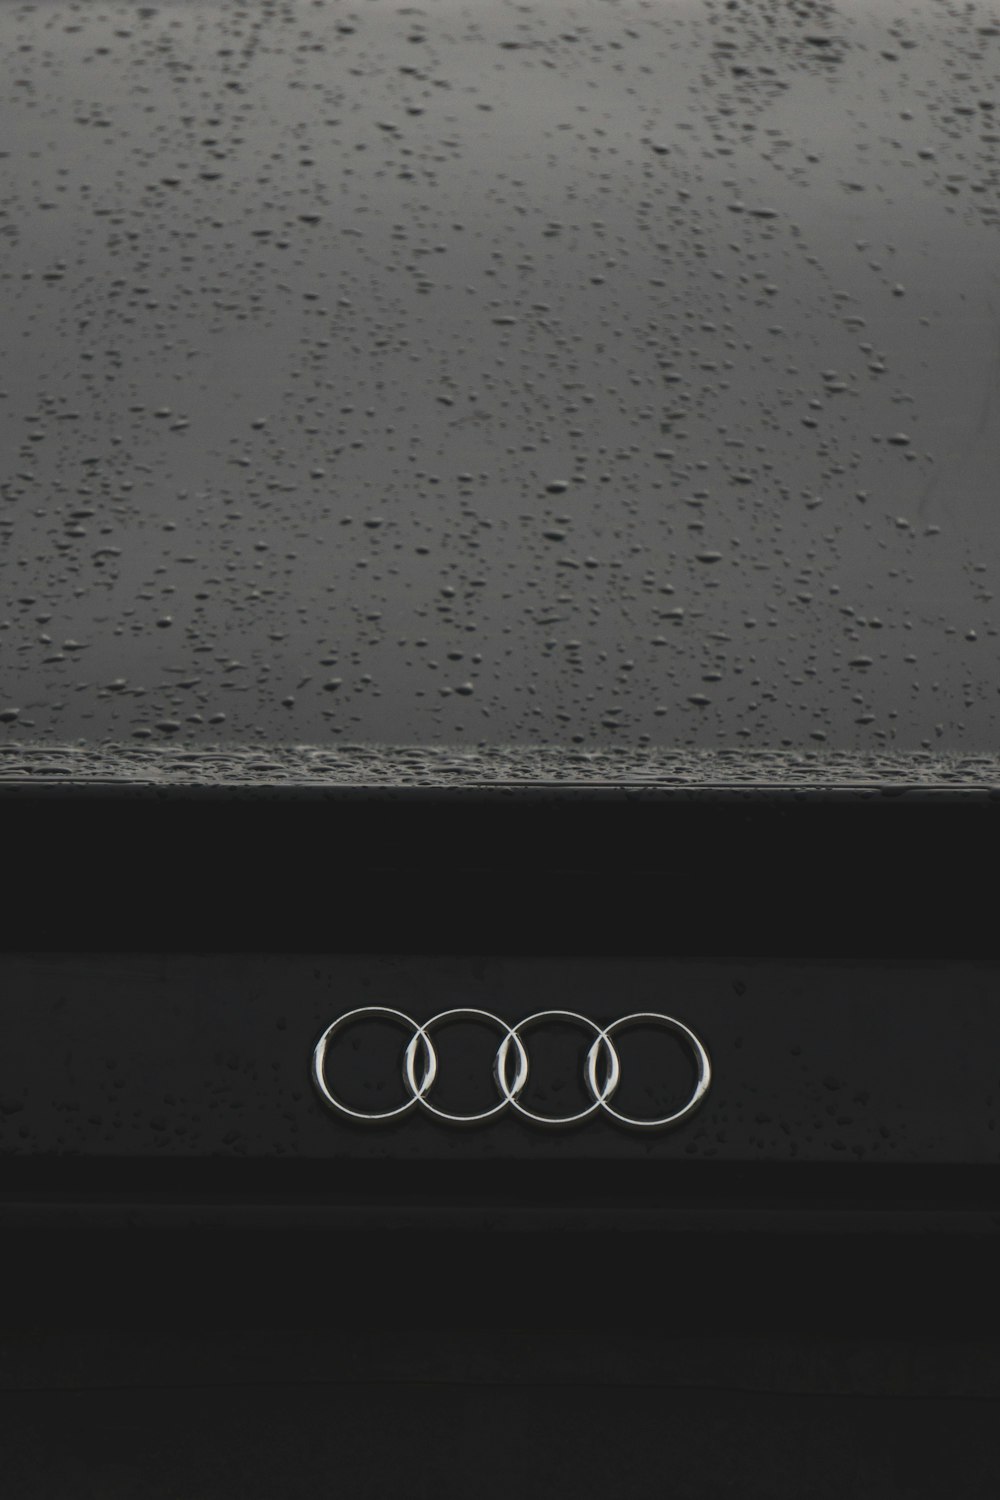 Audi logo photo – Free Grey Image on Unsplash